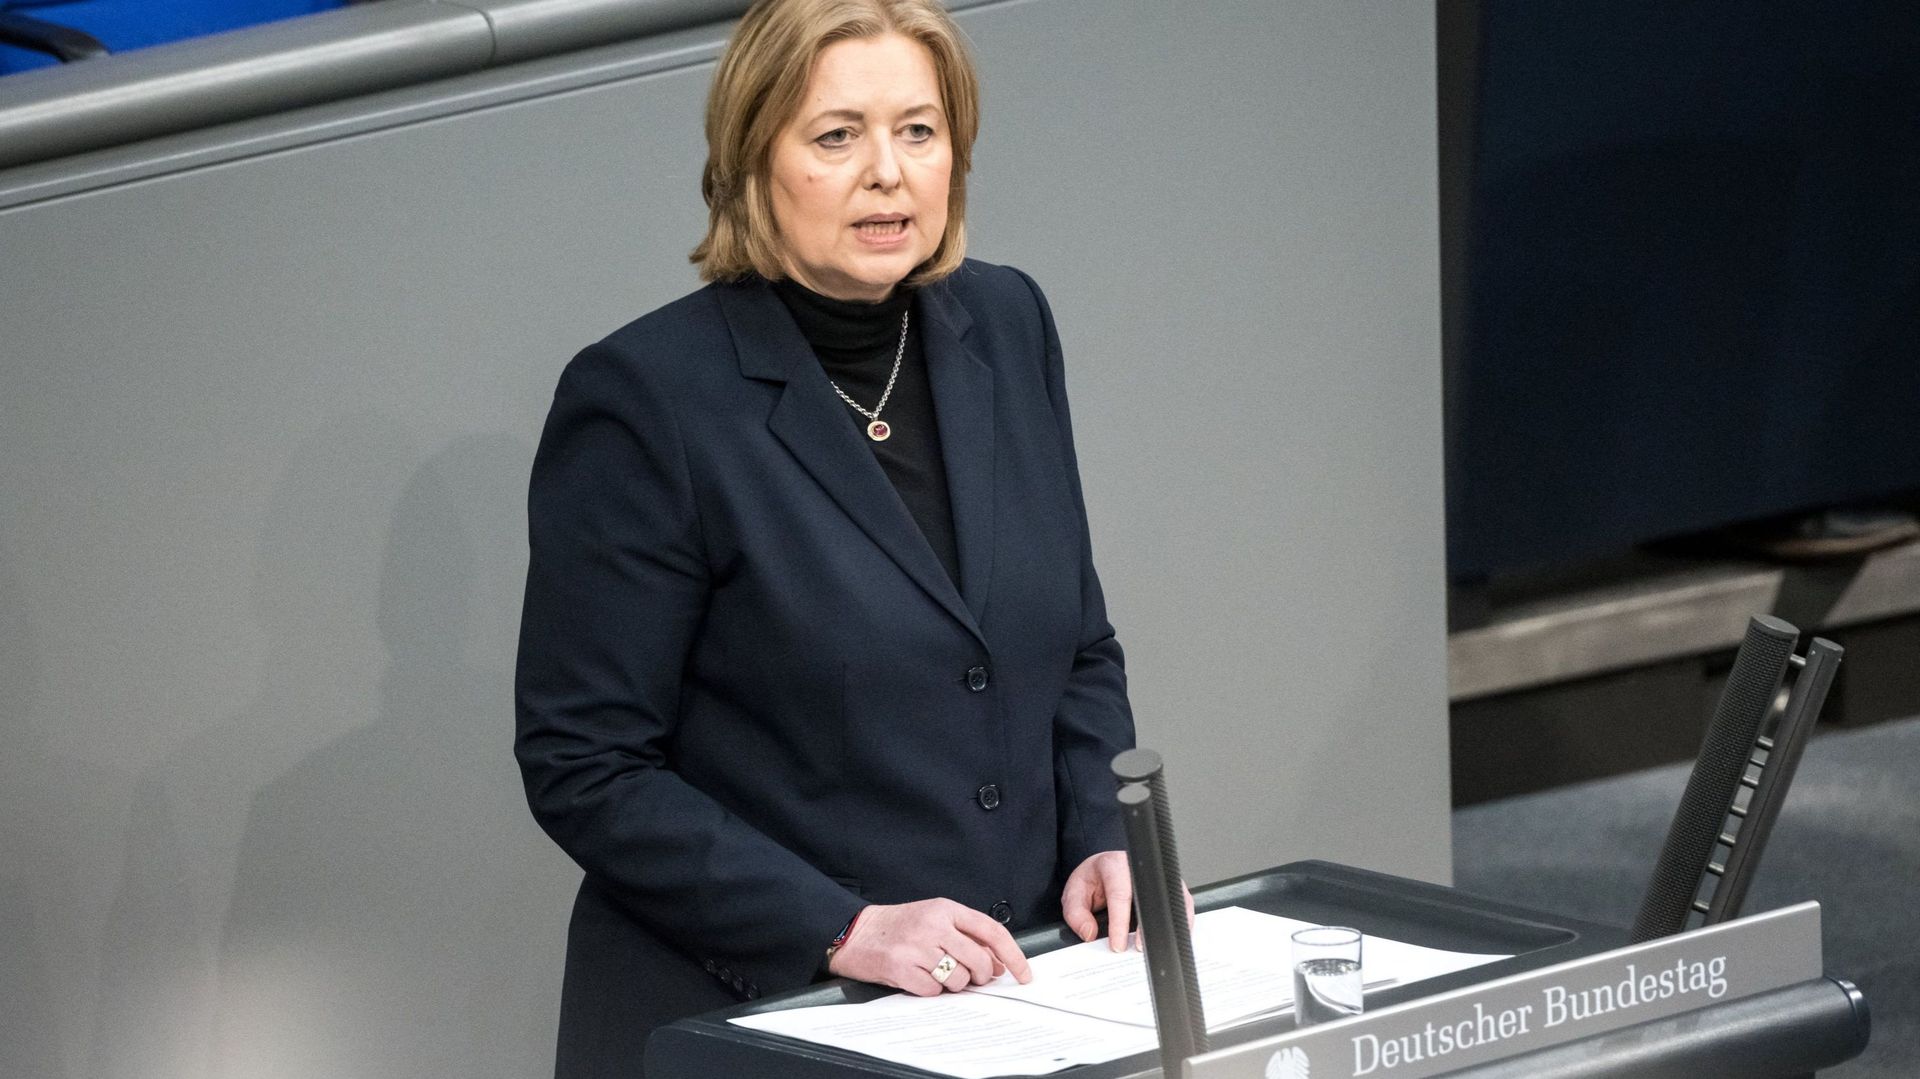 La présidentz du Bundestag, M. Baerbel Bas, prend la parole lors de la cérémonie annuelle à la mémoire des victimes et des survivants de l’Holocauste dans la salle plénière du Bundestag, la chambre basse du parlement allemand, à Berlin, le 27 janvier 2023